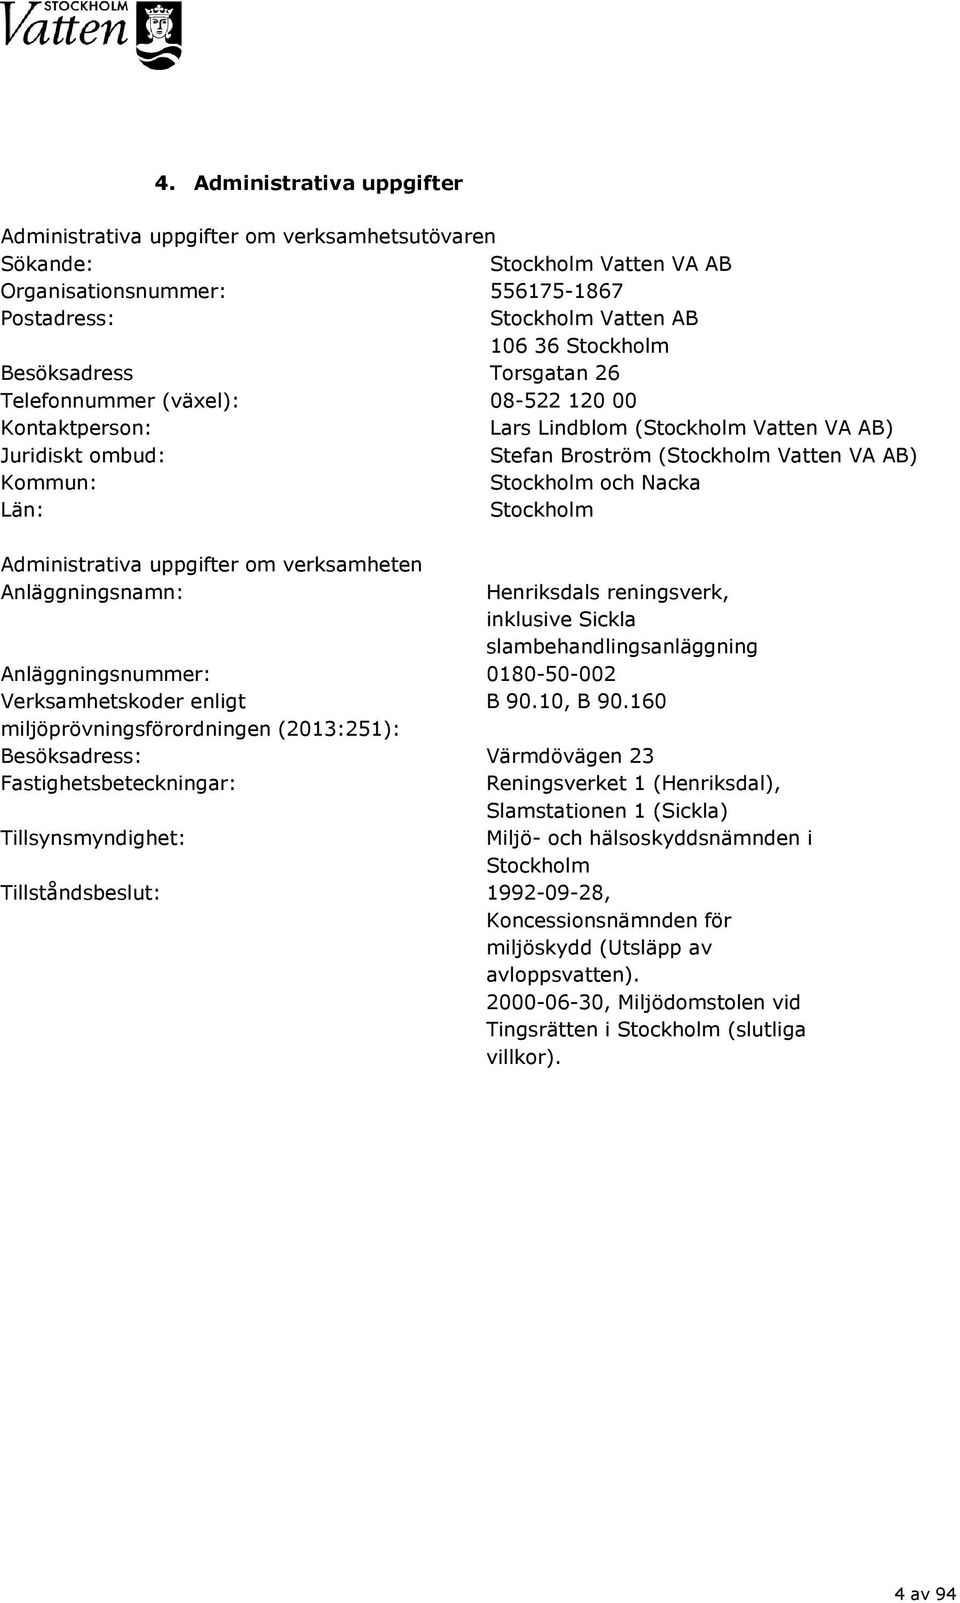 Nacka Län: Stockholm Administrativa uppgifter om verksamheten Anläggningsnamn: Henriksdals reningsverk, inklusive Sickla slambehandlingsanläggning Anläggningsnummer: 0180-50-002 Verksamhetskoder